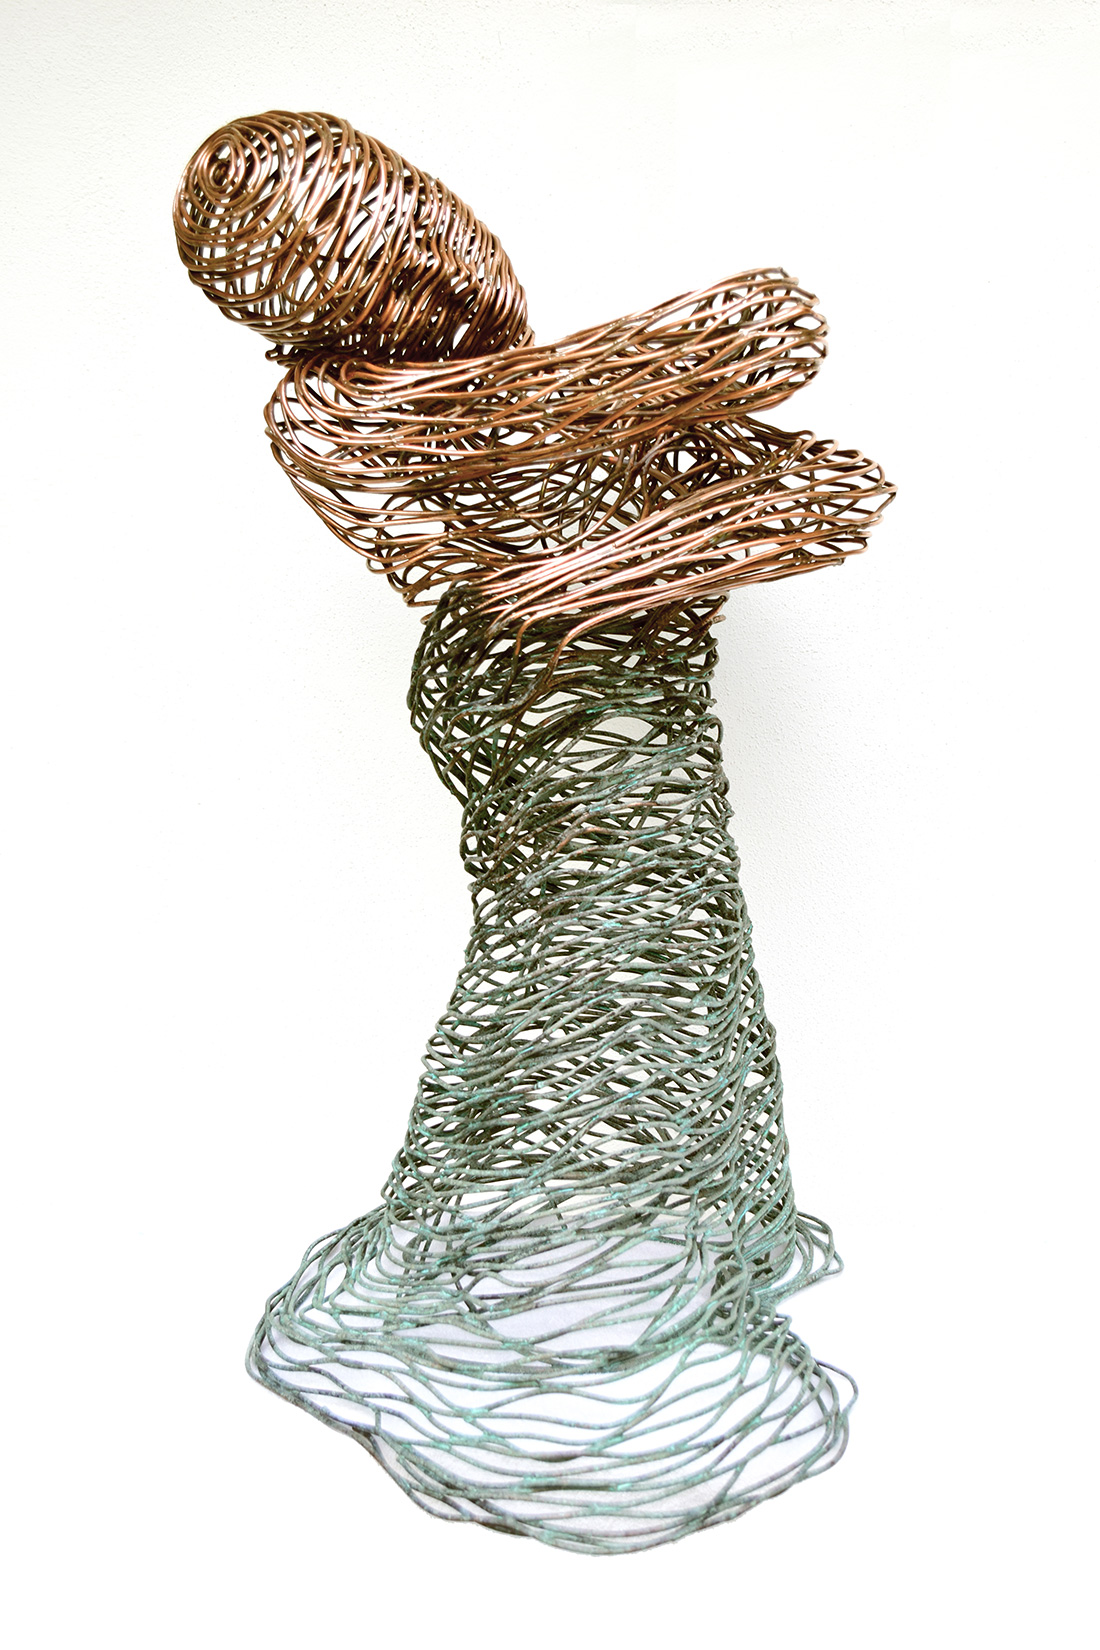 Bonzano Stefano, Acqua, Scultura in tubolare di rame saldato a mano, 90x65x45 cm, 2015. Collezione privata.